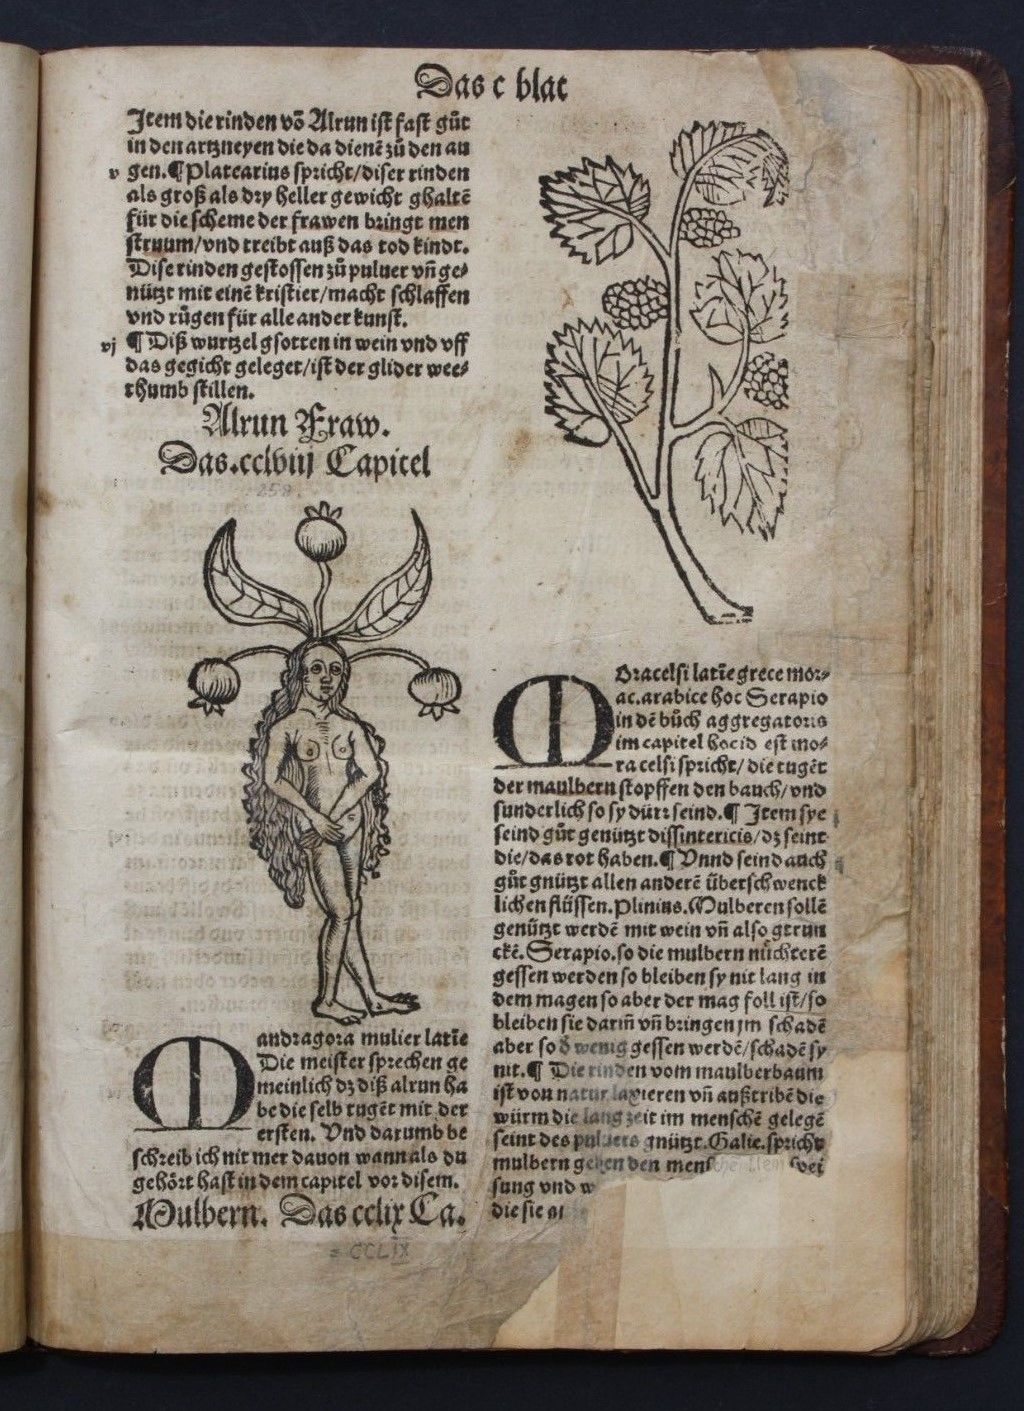 CUBE DAS KREUTTER BUCH ODER HERBARIUS & CRESCENTIUS ACKLERBAW,KNOBLOCH,1531